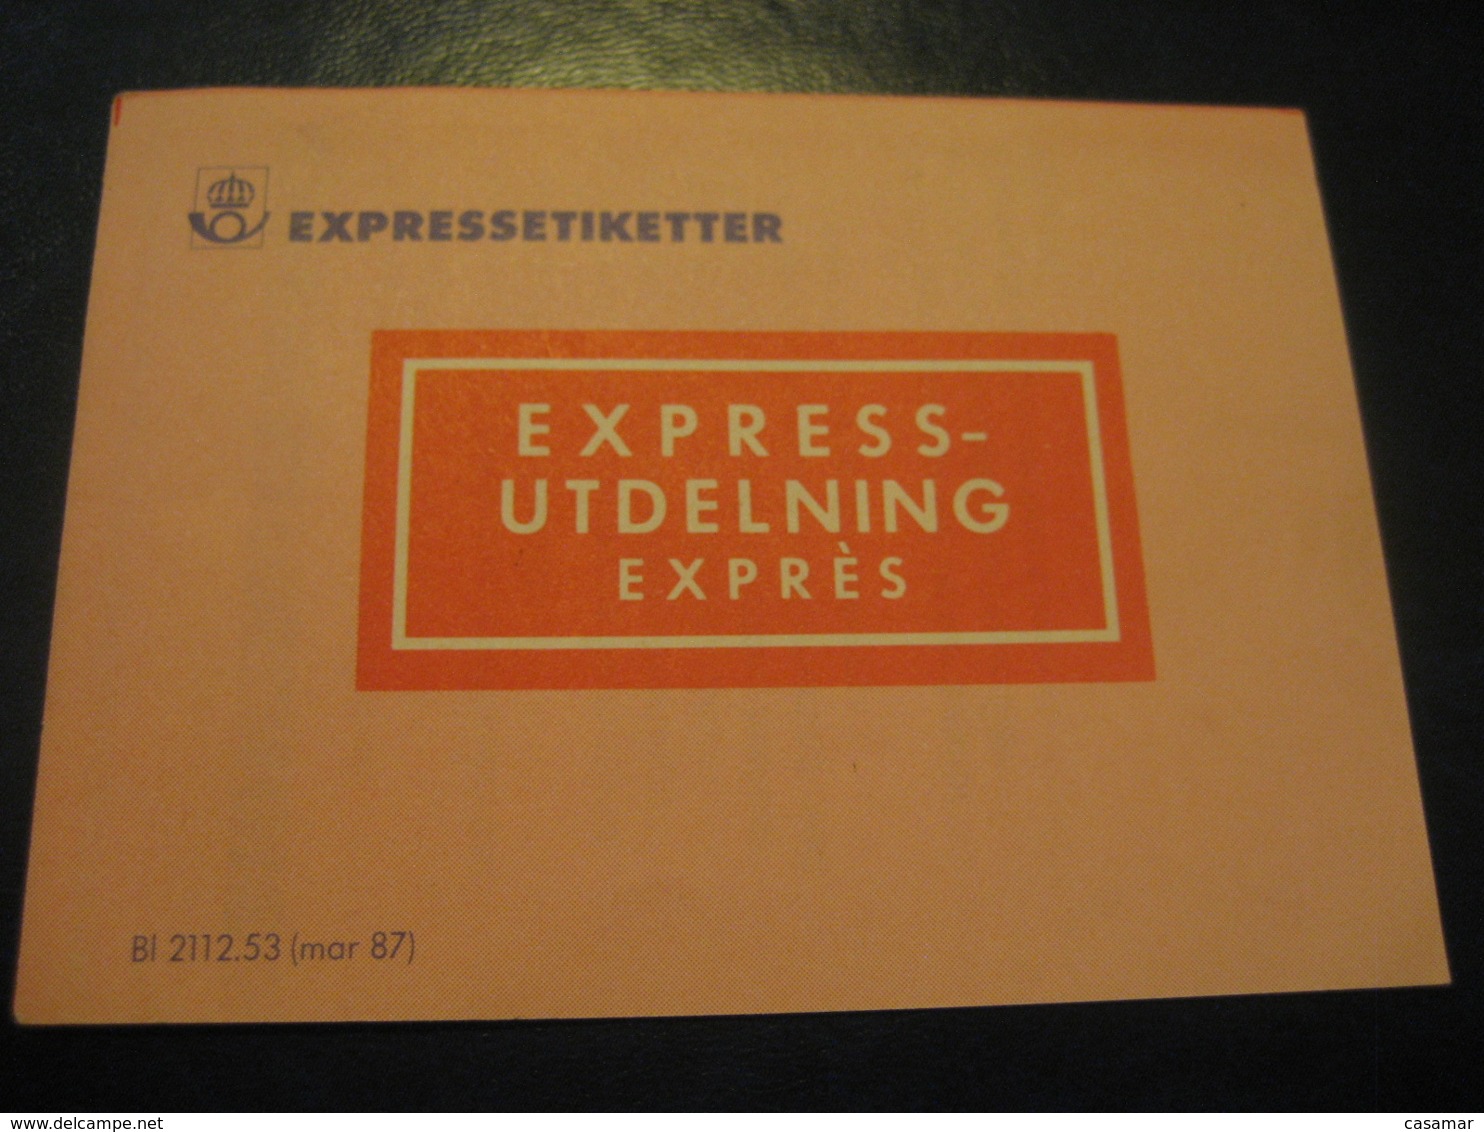 EXPRESSETIKETTER Express Utdelning Expres Booklet 20 Label SWEDEN - Unclassified